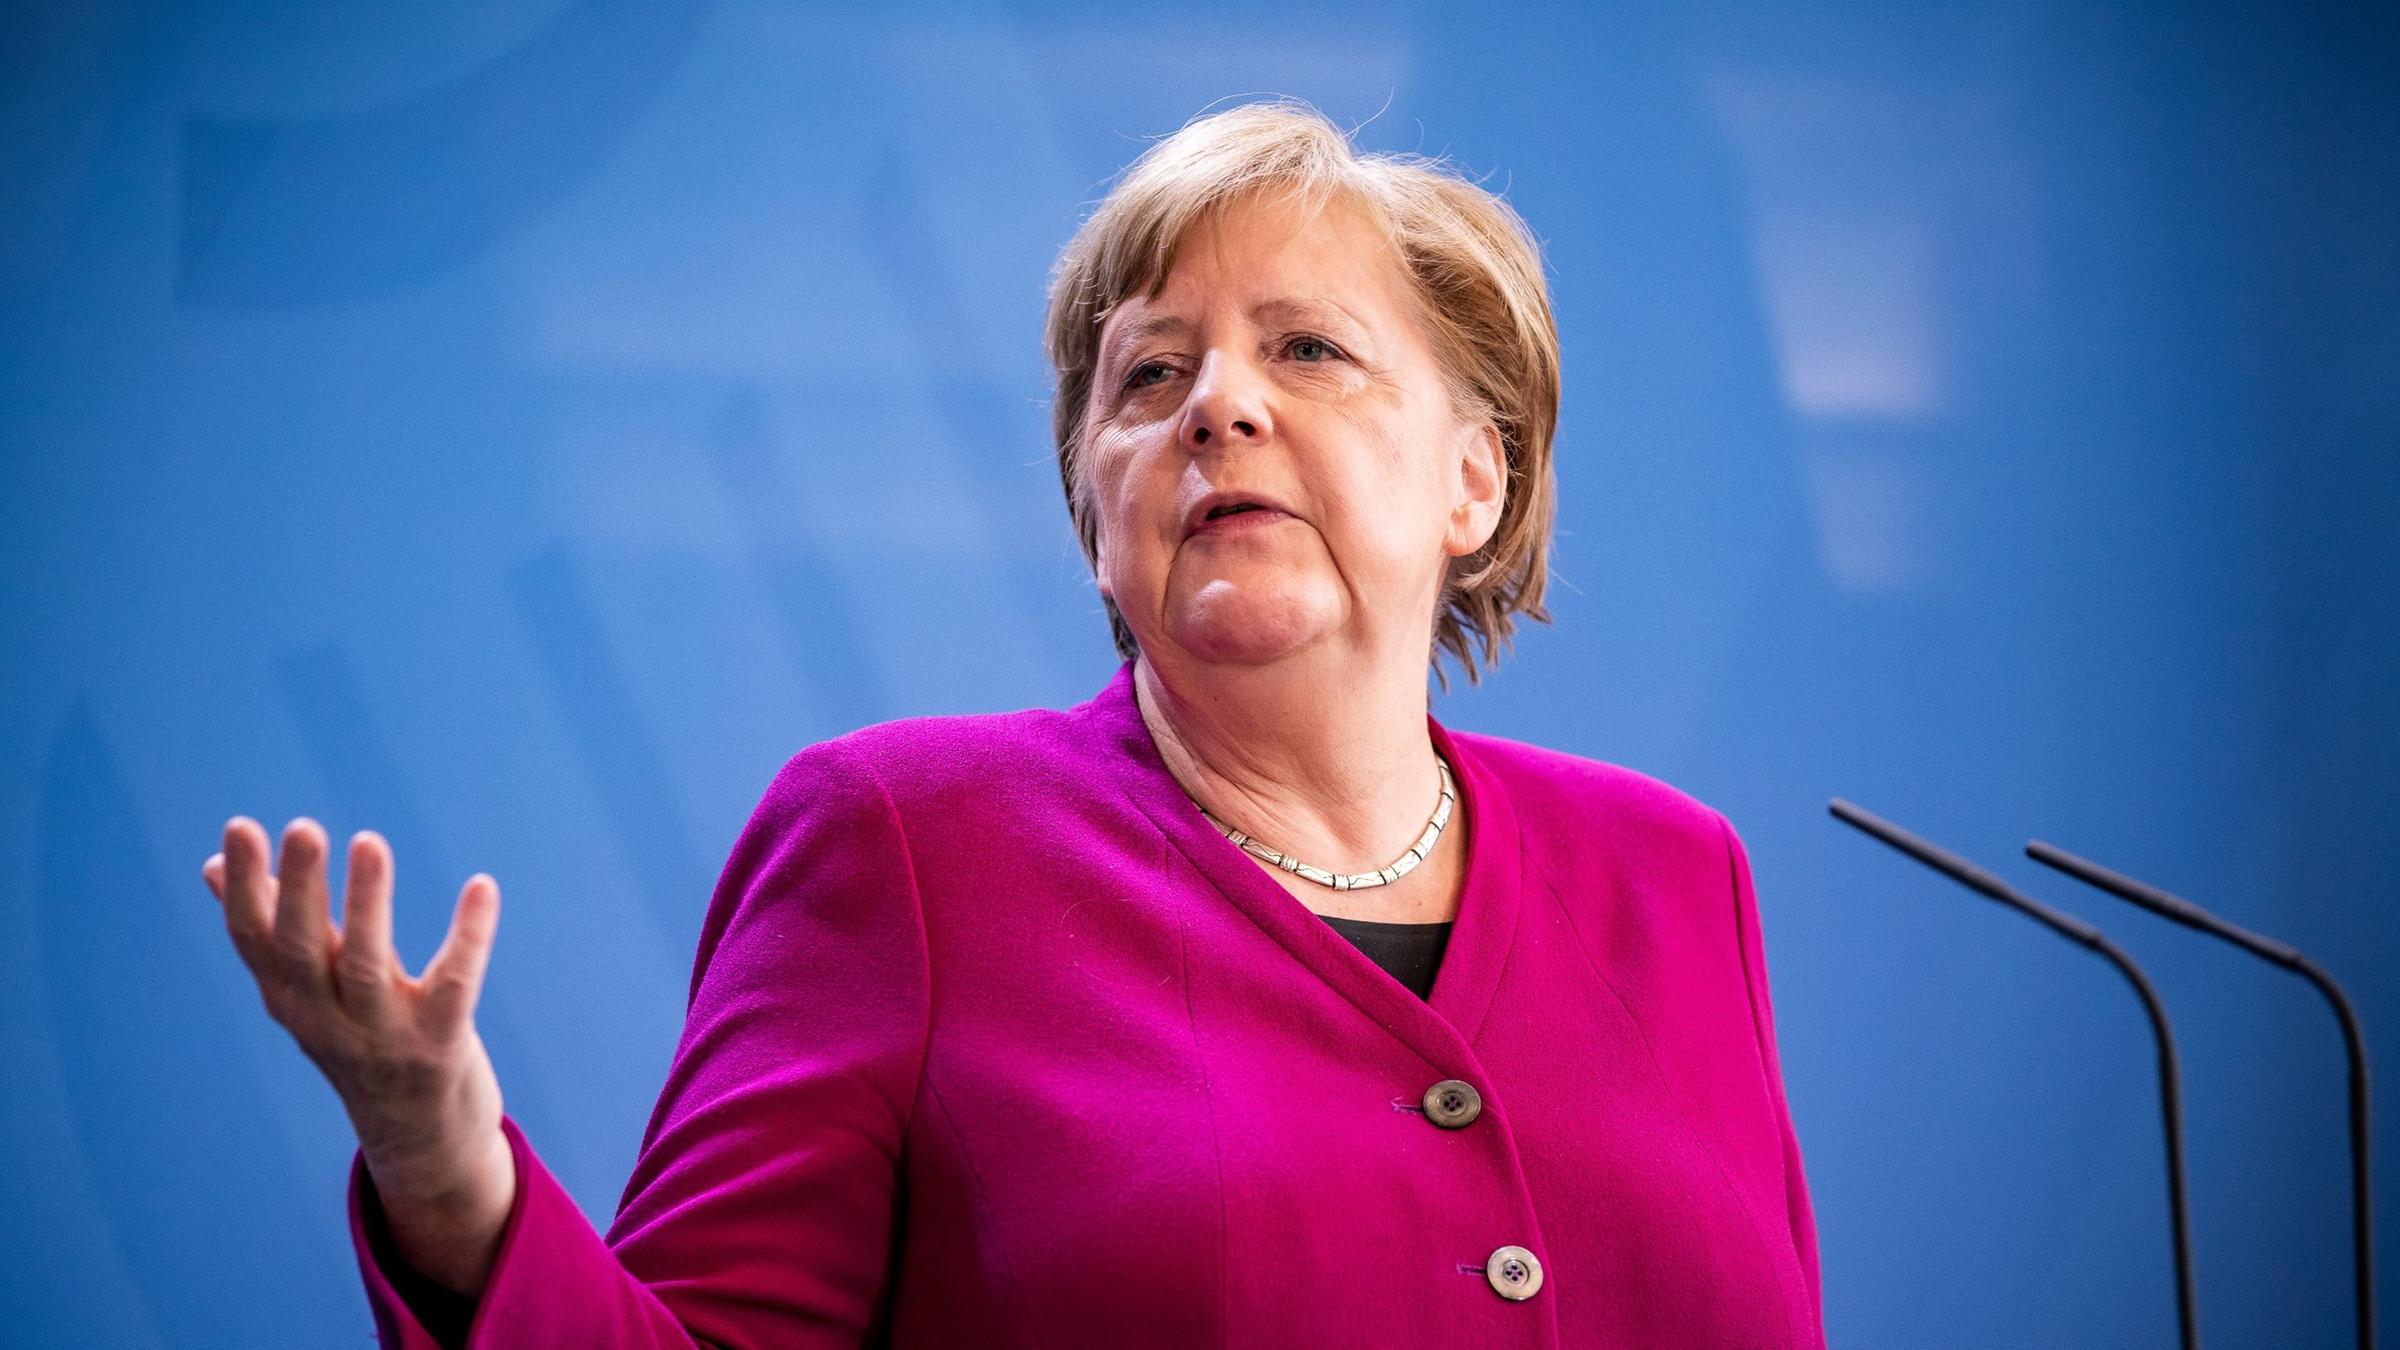 Angela Merkel vrea să înfrunte „problemele mondiale” împreună cu Joe Biden, președintele ales al SUA